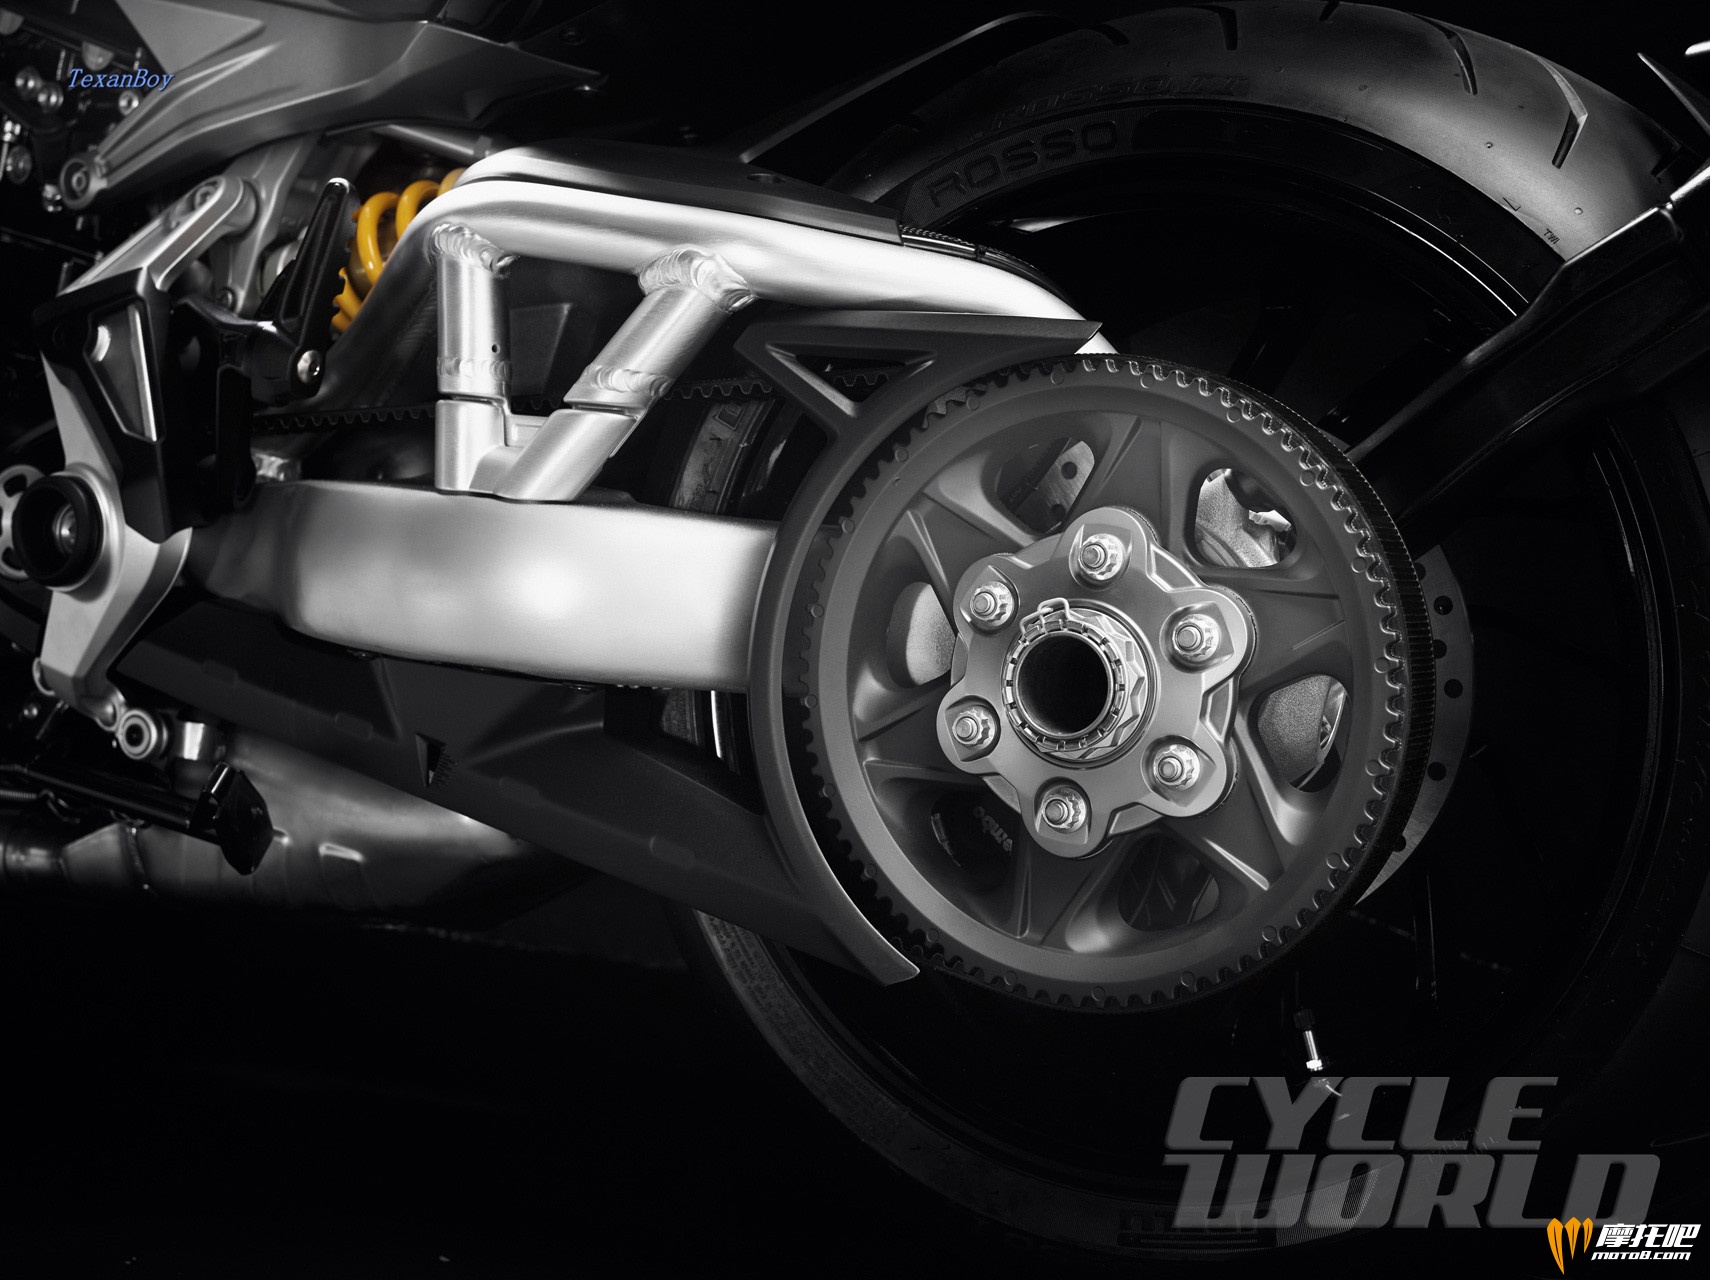 2016-Ducati-XDIAVEL-S_15.jpg